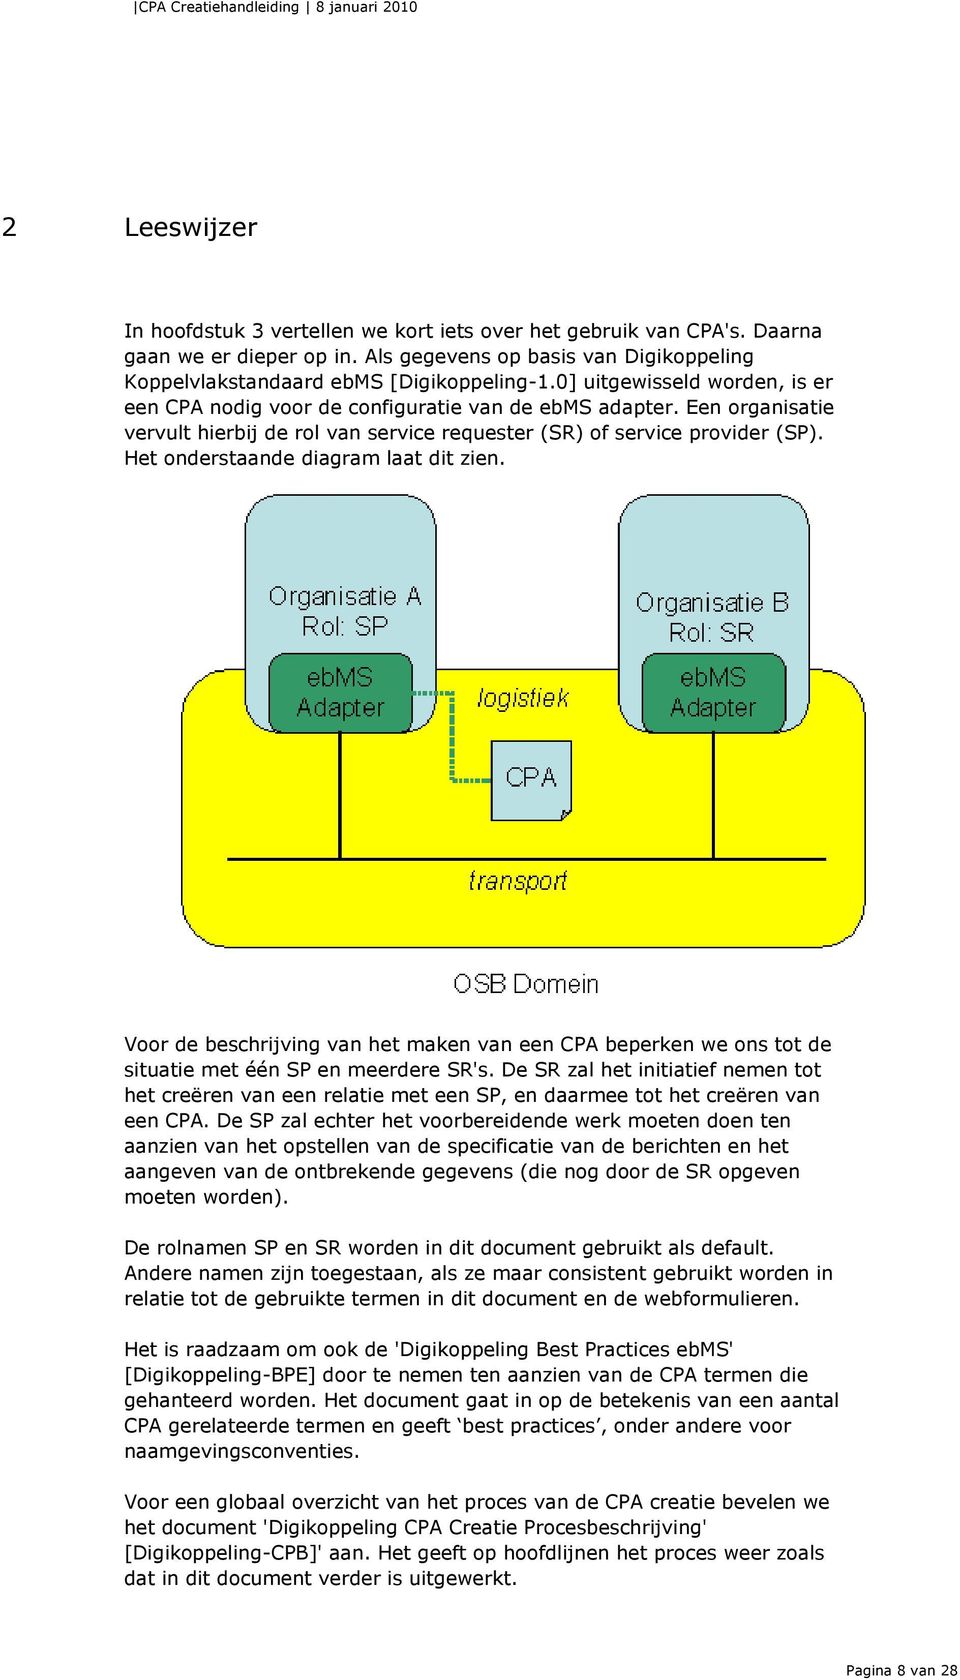 Het onderstaande diagram laat dit zien. Voor de beschrijving van het maken van een CPA beperken we ons tot de situatie met één SP en meerdere SR's.